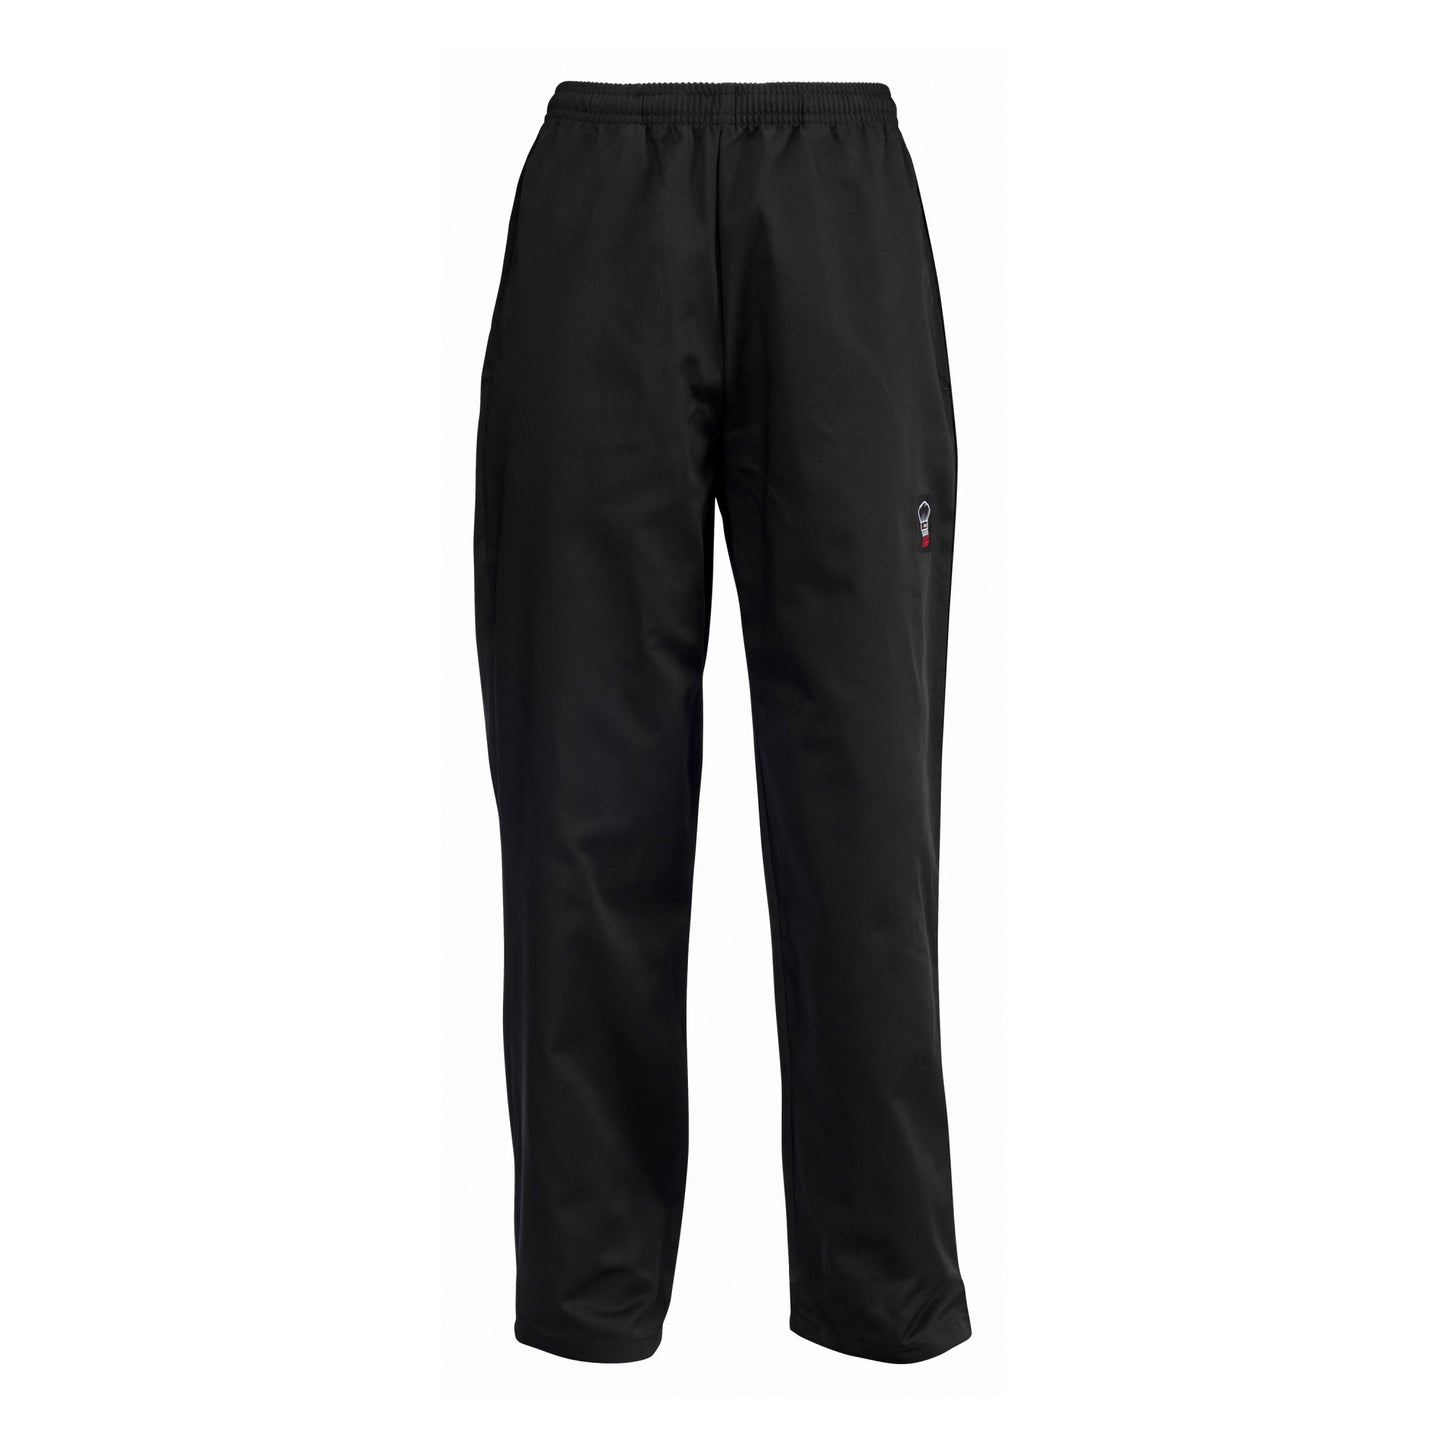 UNF-2KXXL - Chef Pants, Black - 2X-Large